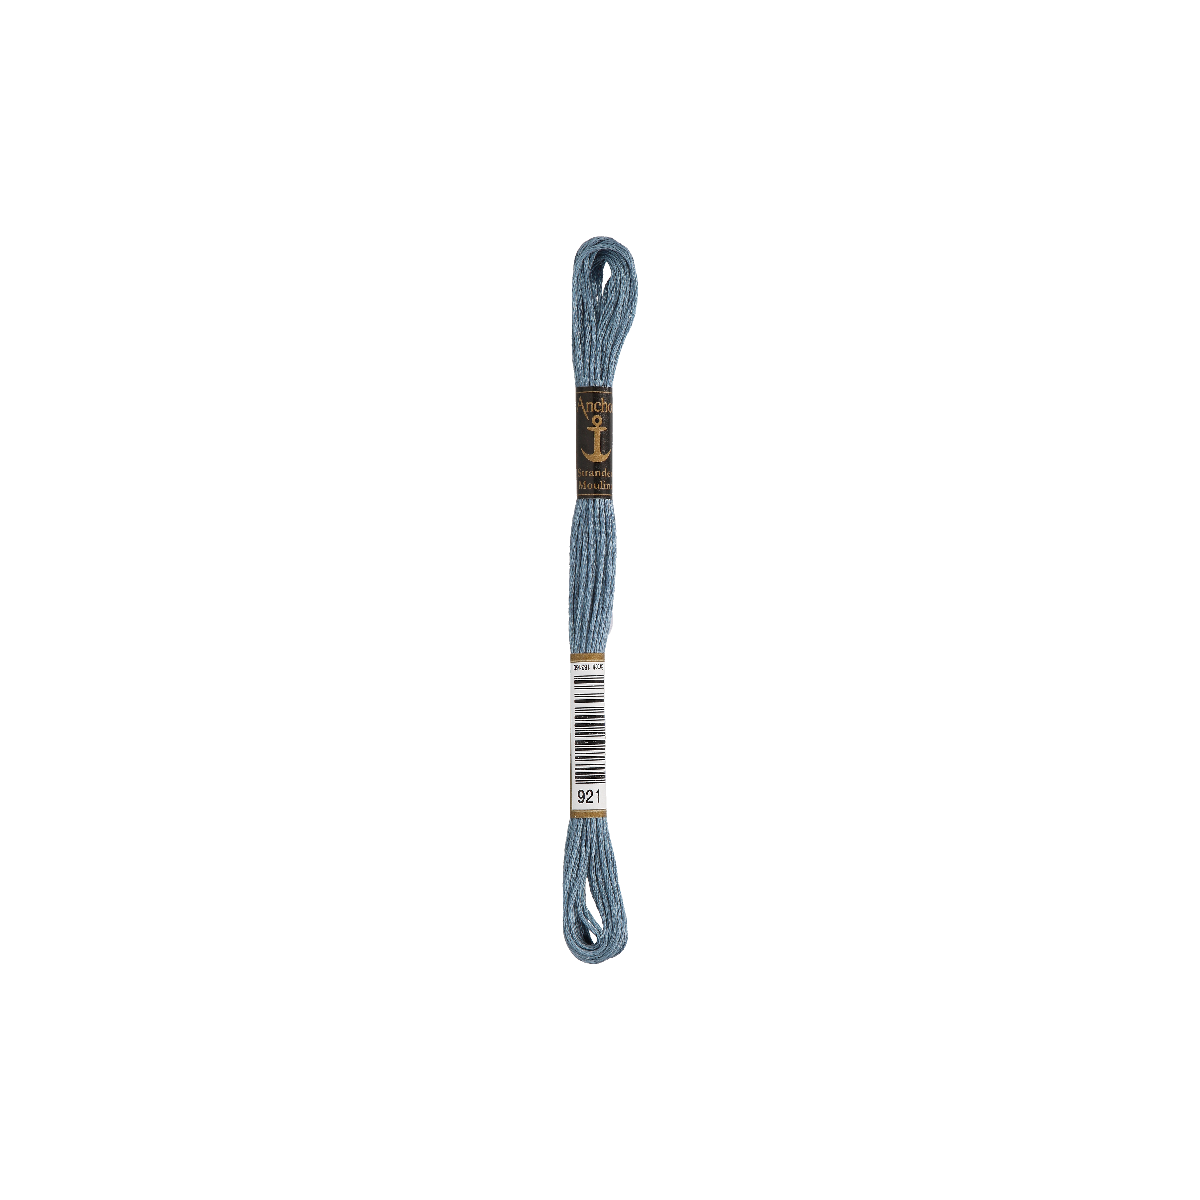 Anchor Sticktwist 8m, grigio-blu, cotone, colore 921, 6 fili